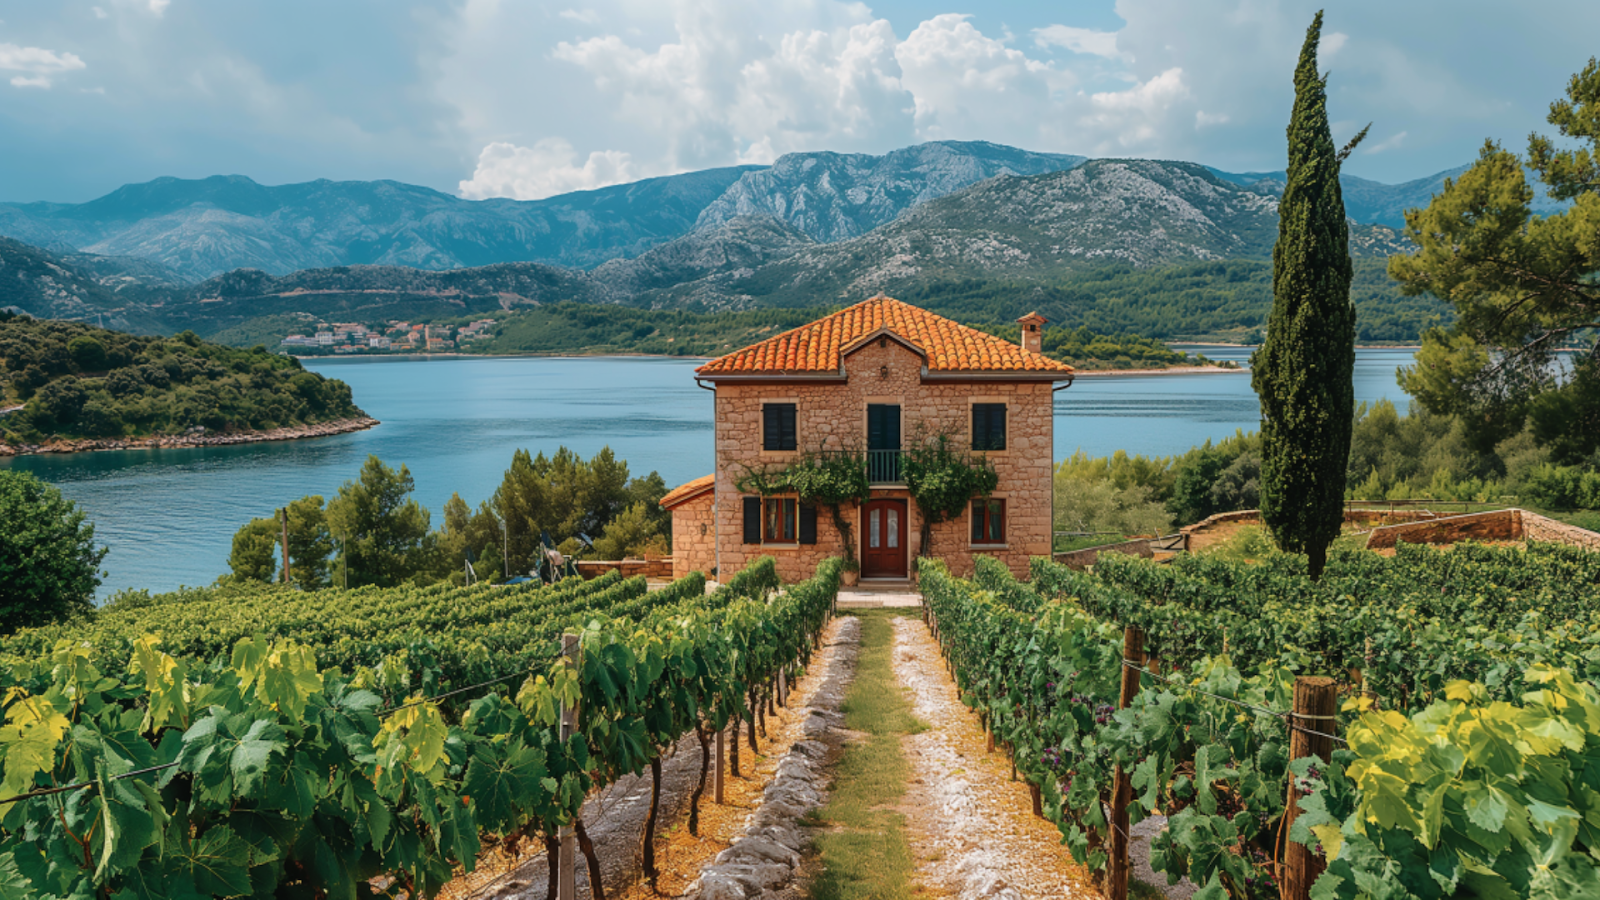 A local picturesque vineyard in Croatia.